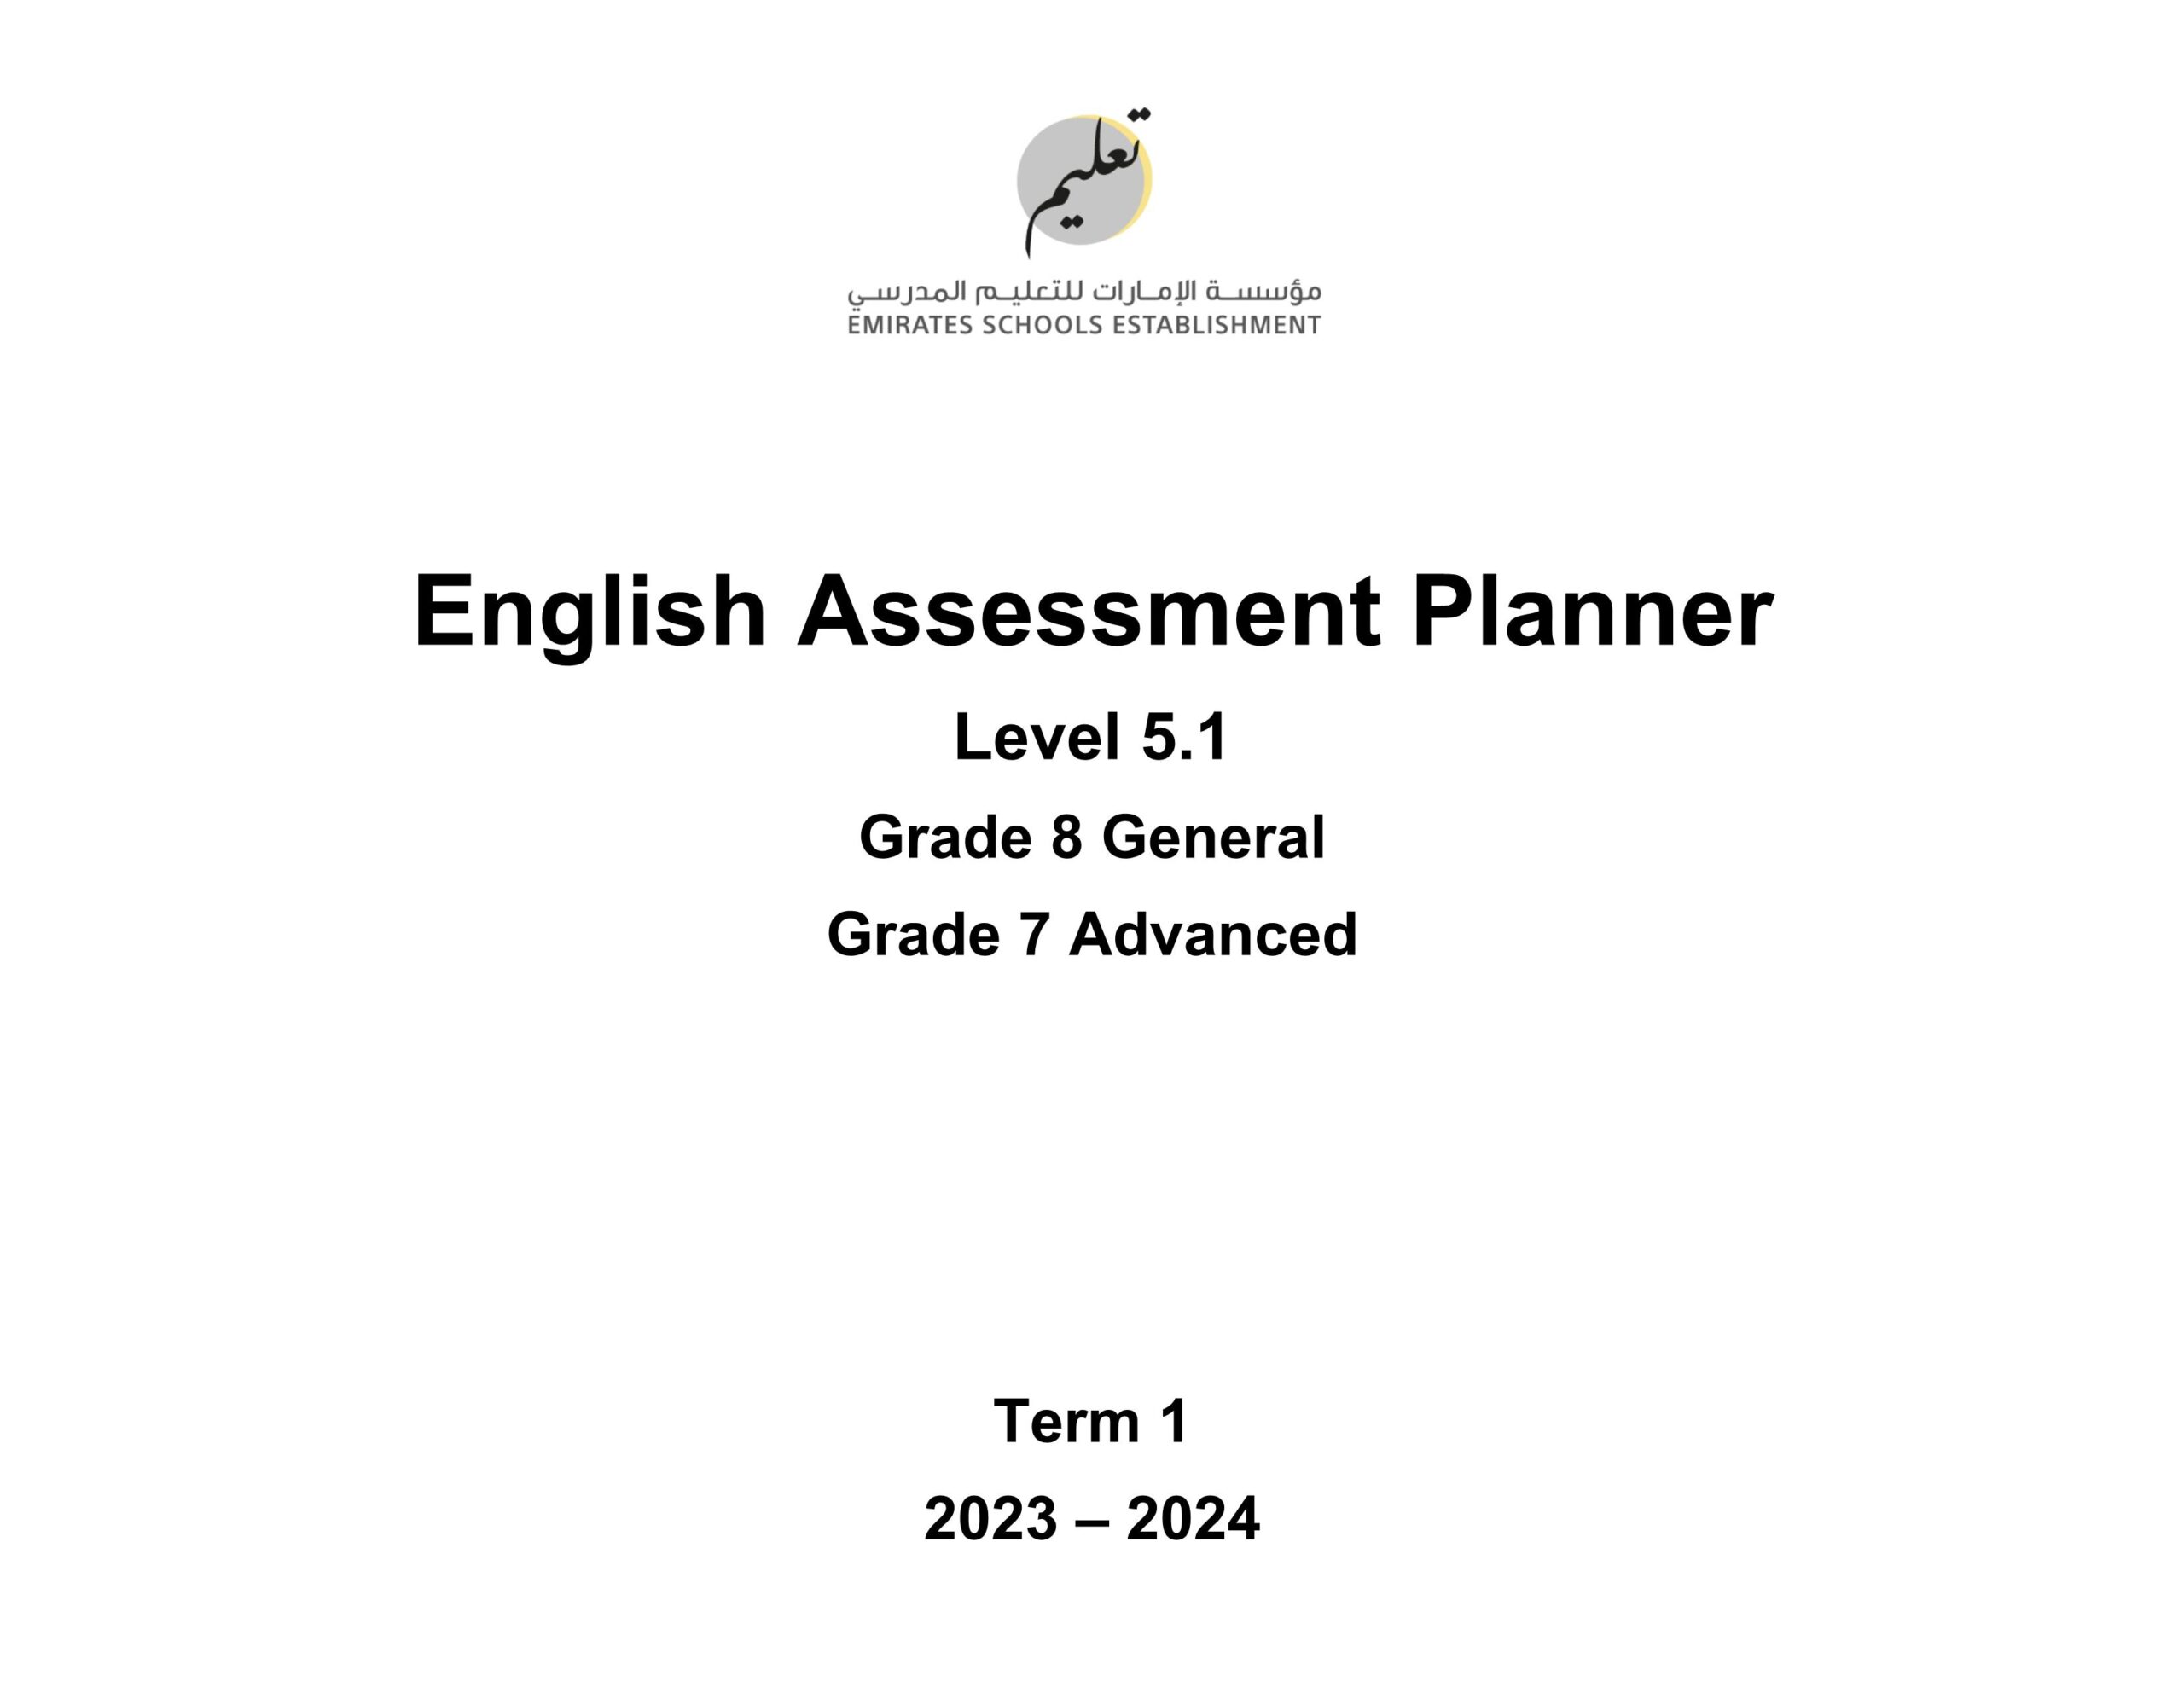 صيغة الامتحان النهائي Assessment Planner 5.1 اللغة الإنجليزية السابع متقدم والثامن عام عام الفصل الدراسي الأول2023-2024